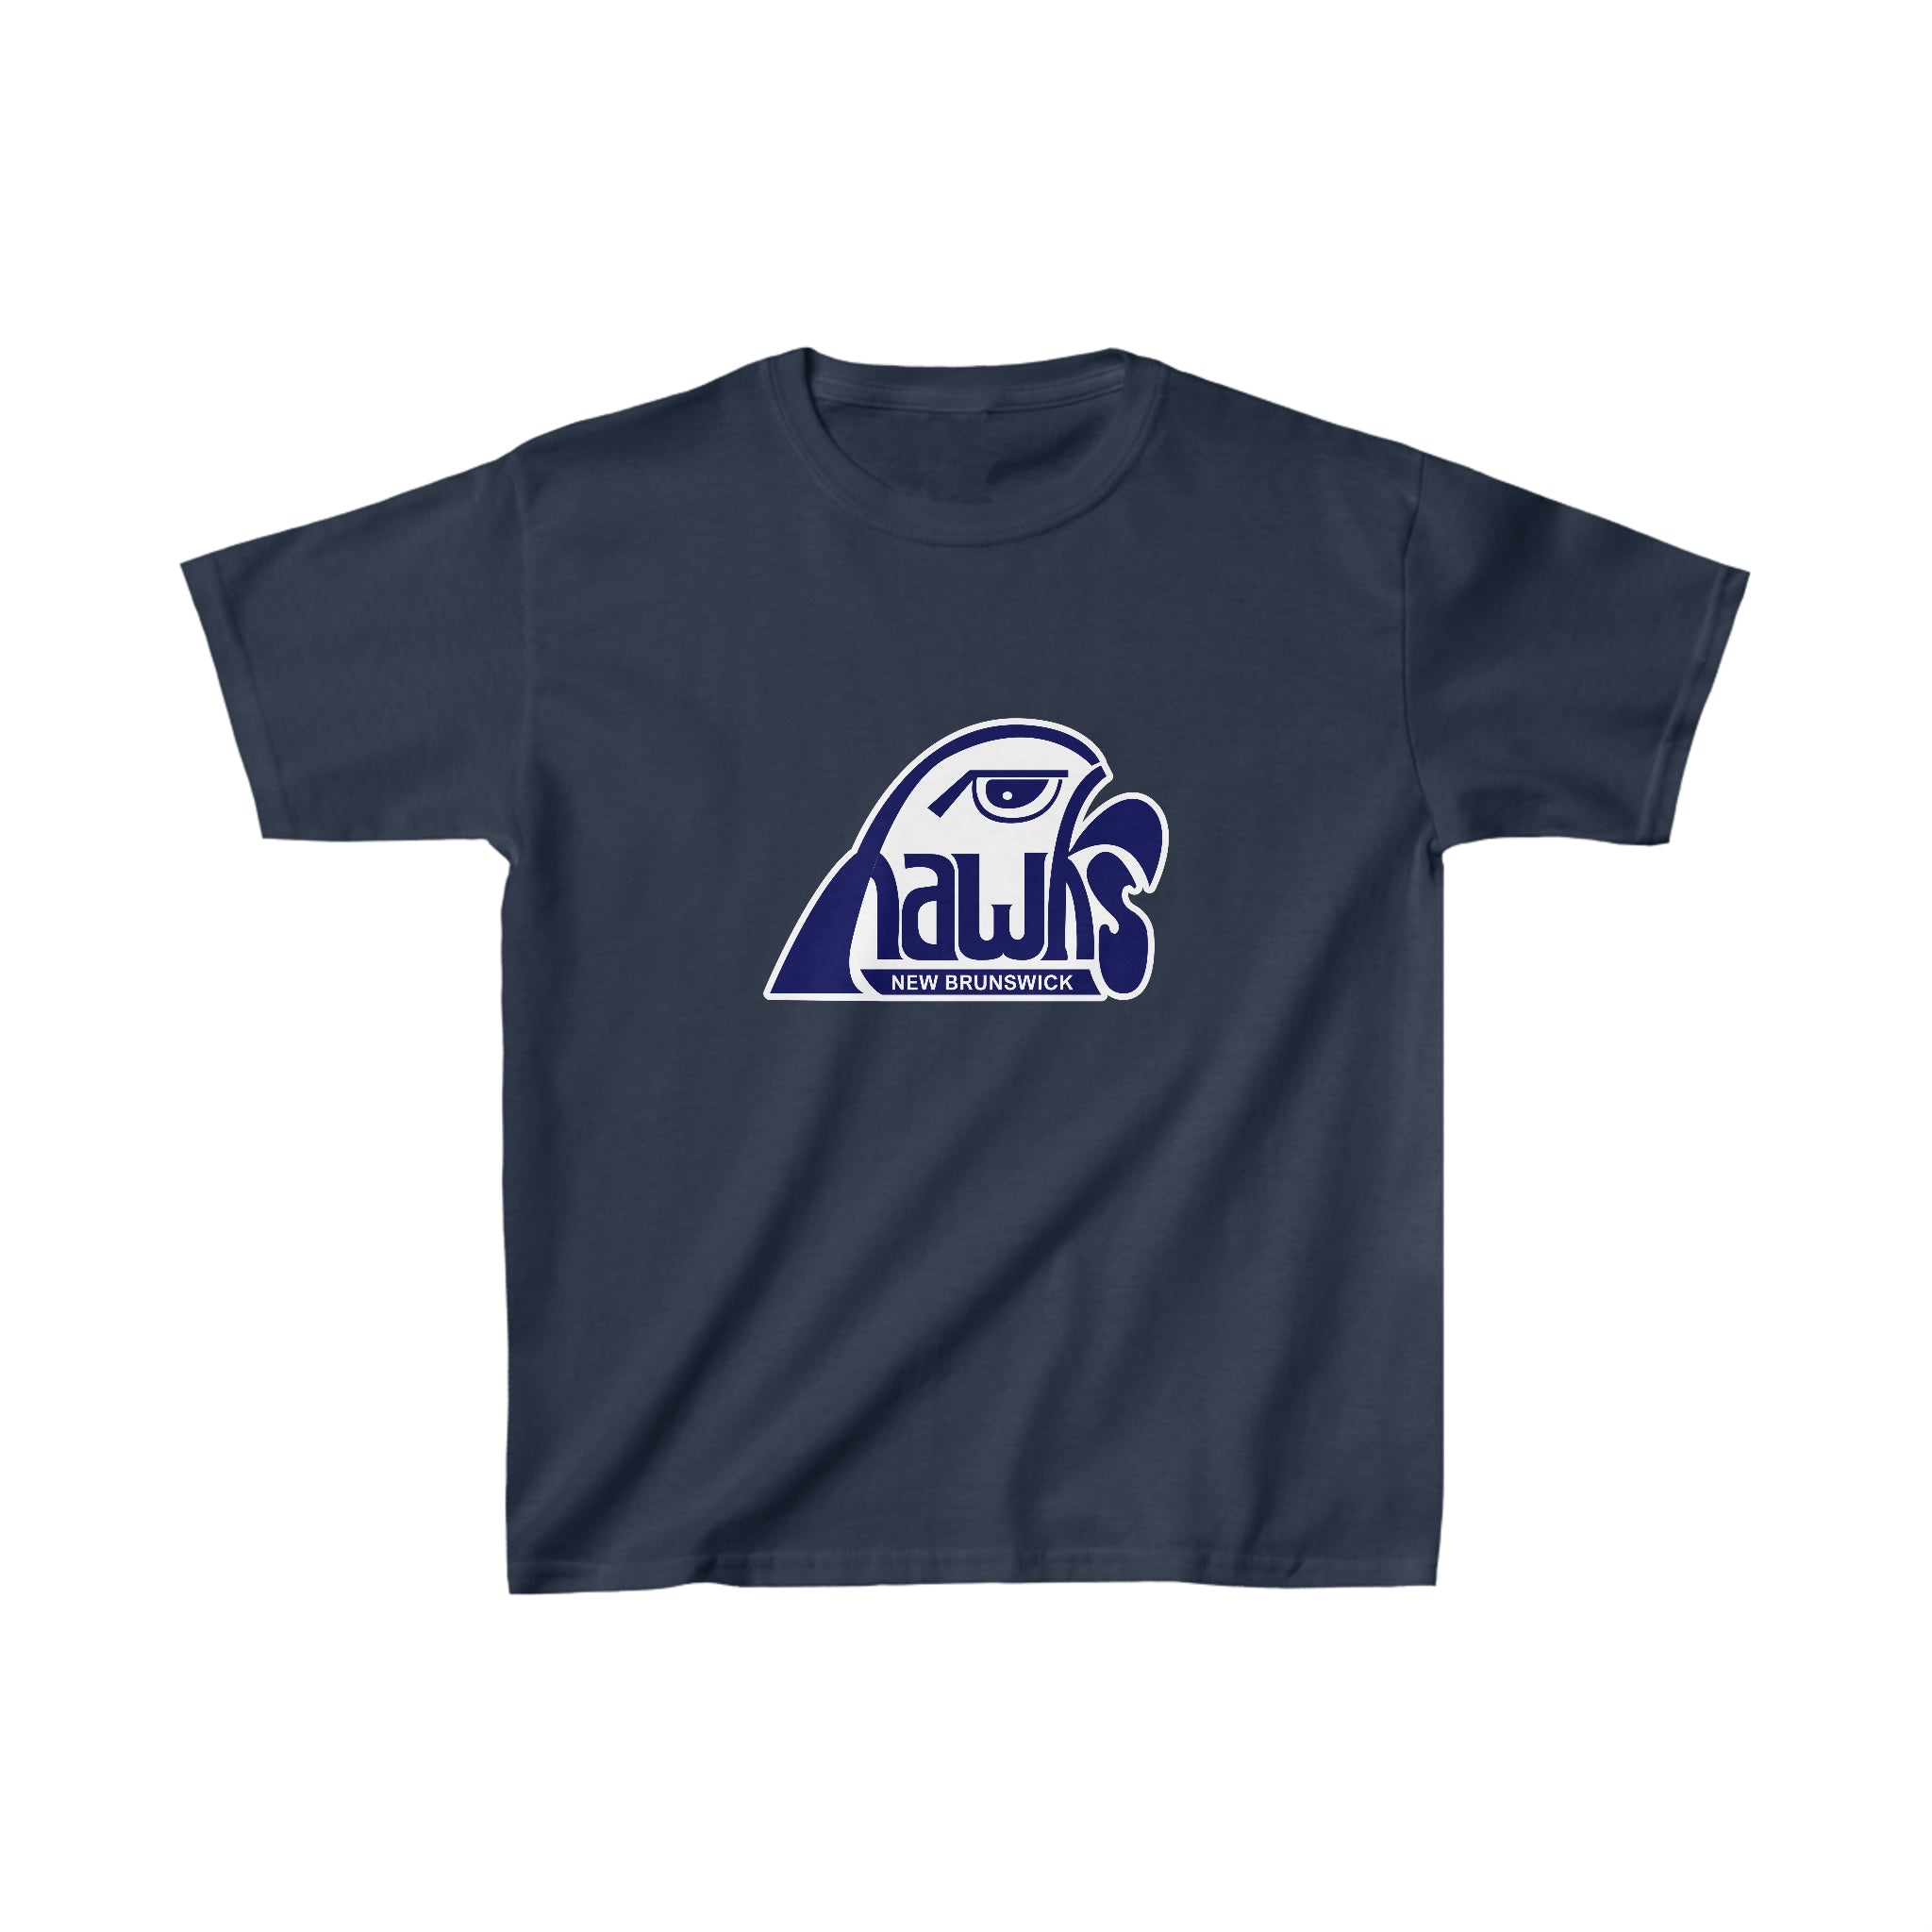 New Brunswick Hawks T-Shirt (Youth)